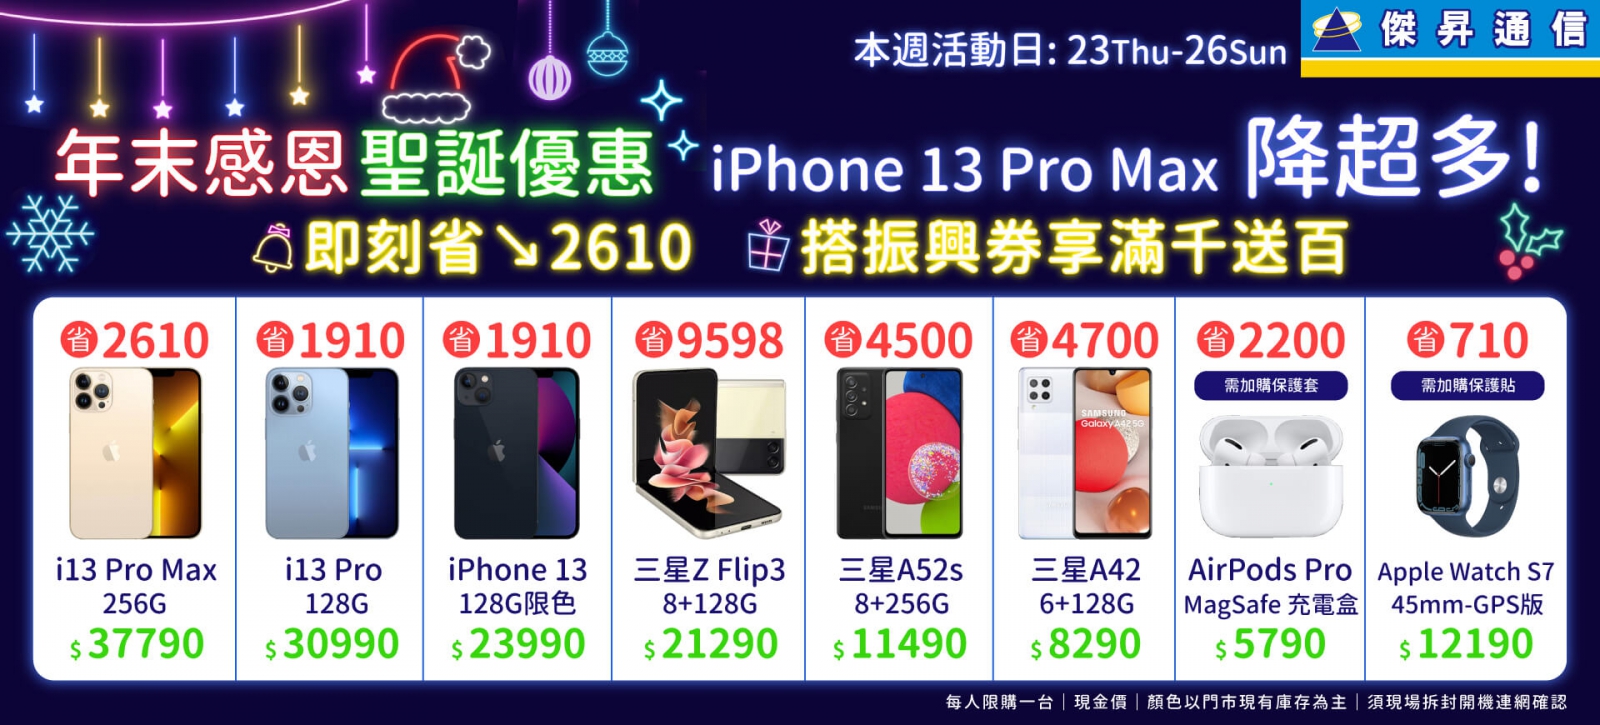 跨年聖誕跑趴超吸睛  iPhone 13 Pro Max大降2610